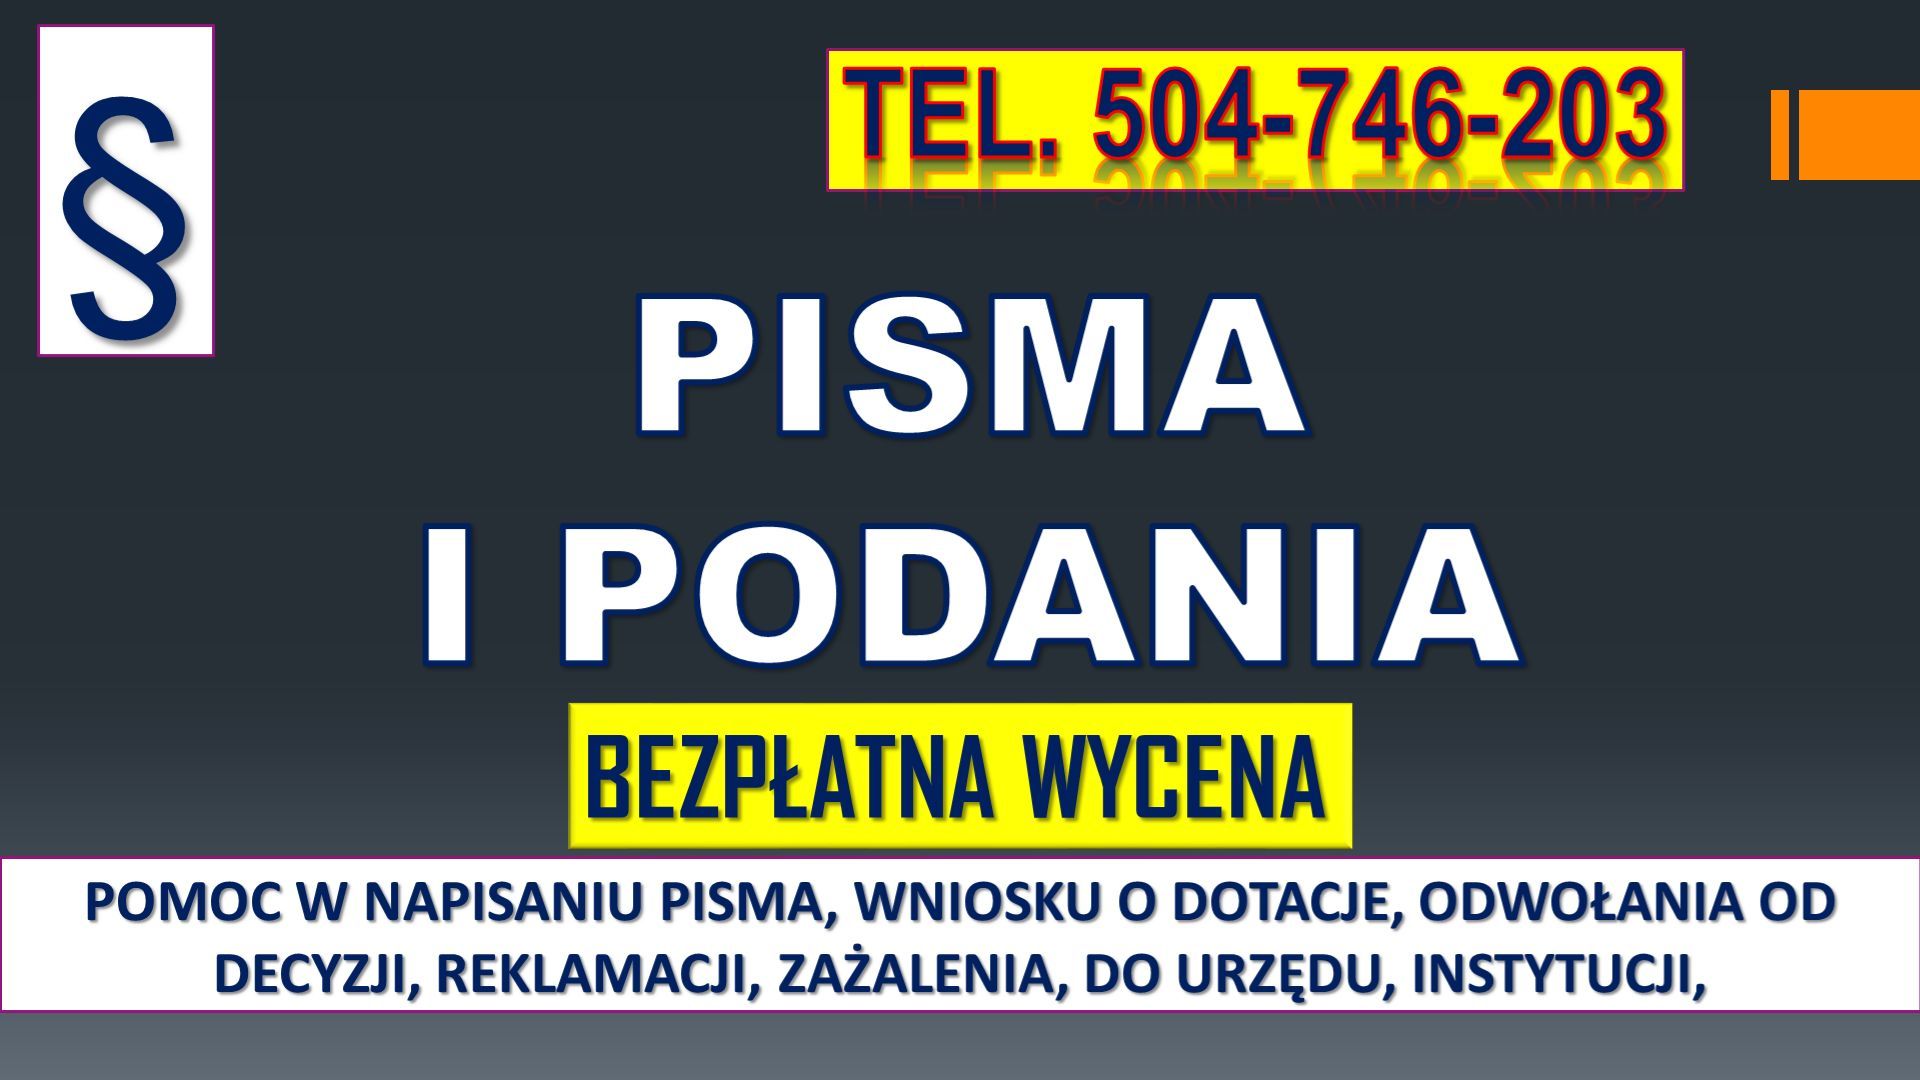 Napisanie pisma i podania, cena t. 504-746-203 Biuro pisania podań, sporządzenie Warszawa - Zdjęcie 1